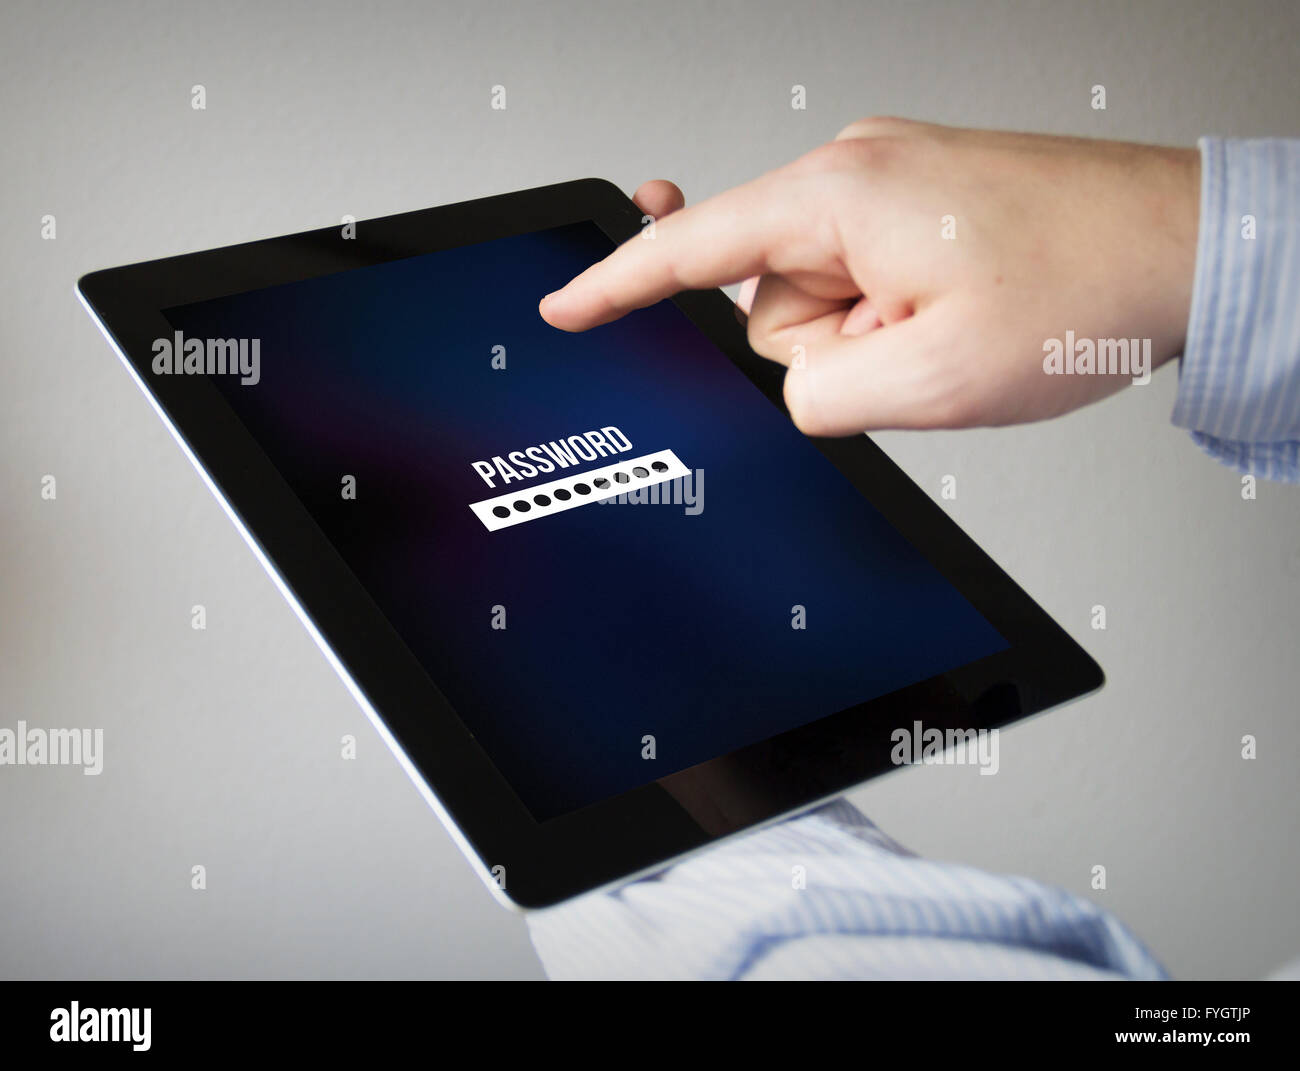 Concept de sécurité nouvelles technologies : les mains à l'écran tactile Tablet avec formulaire de mot de passe Banque D'Images